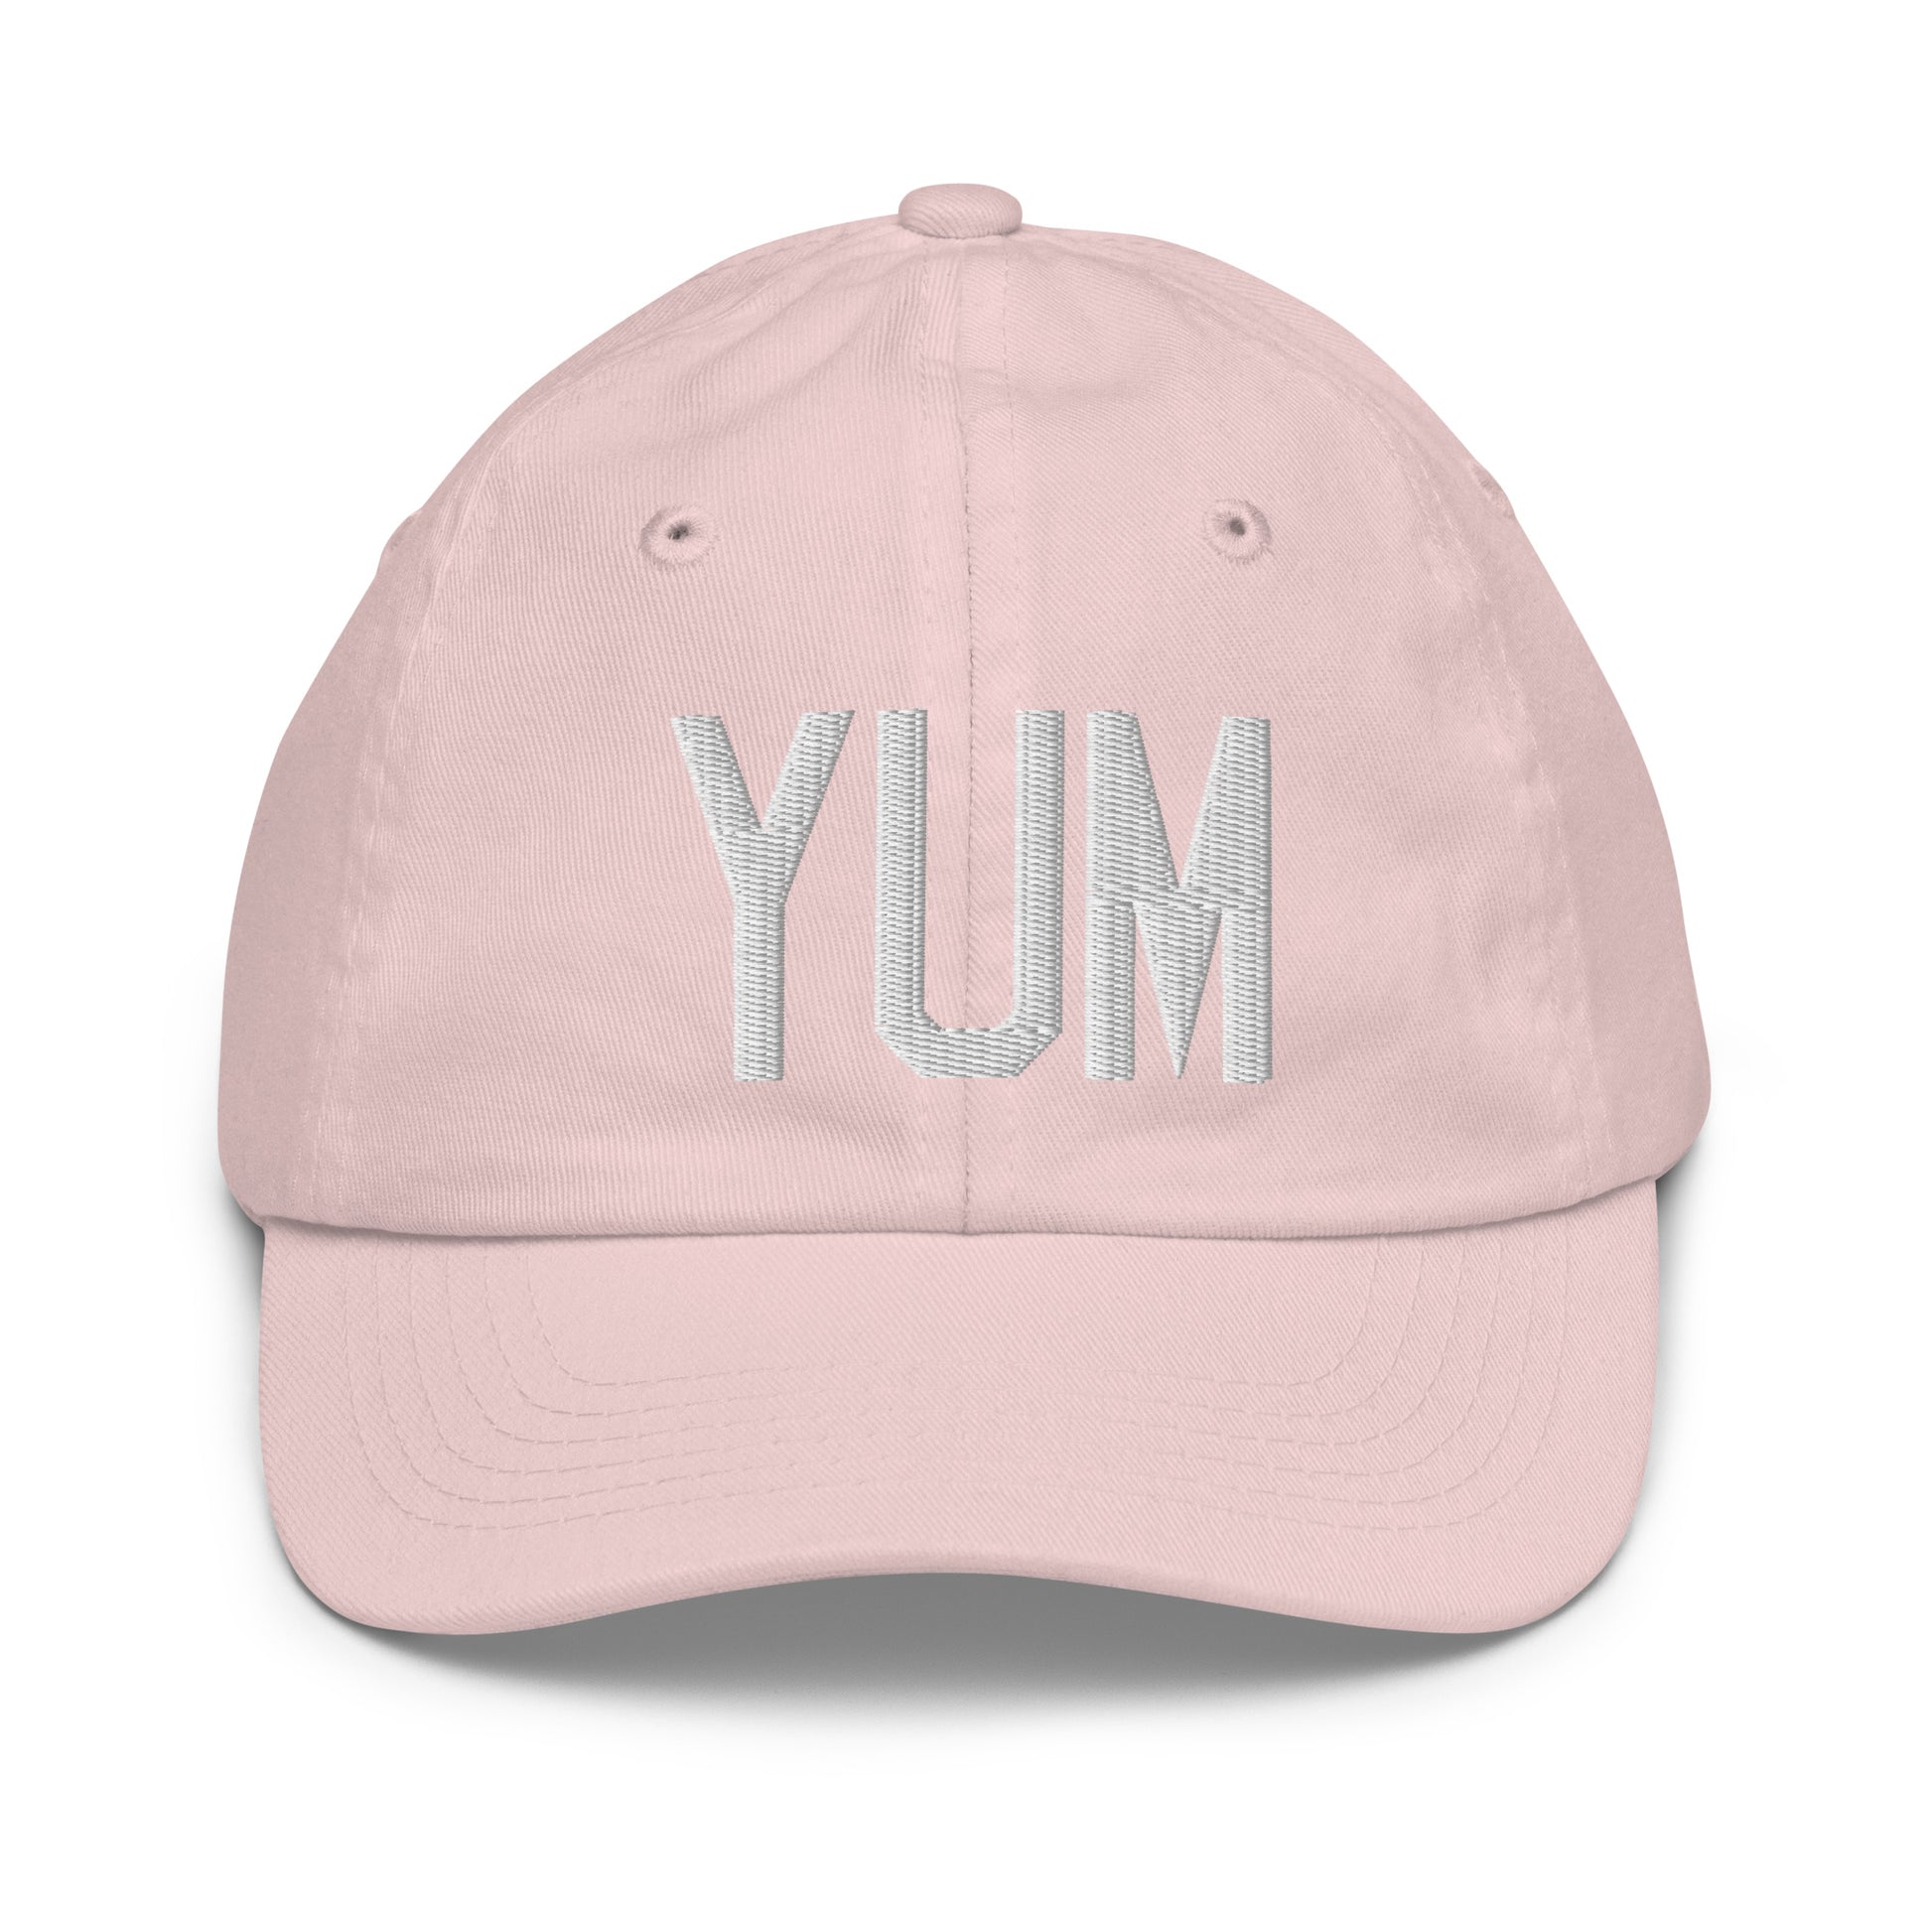 Airport Code Kid's Baseball Cap - White • YUM Yuma • YHM Designs - Image 31